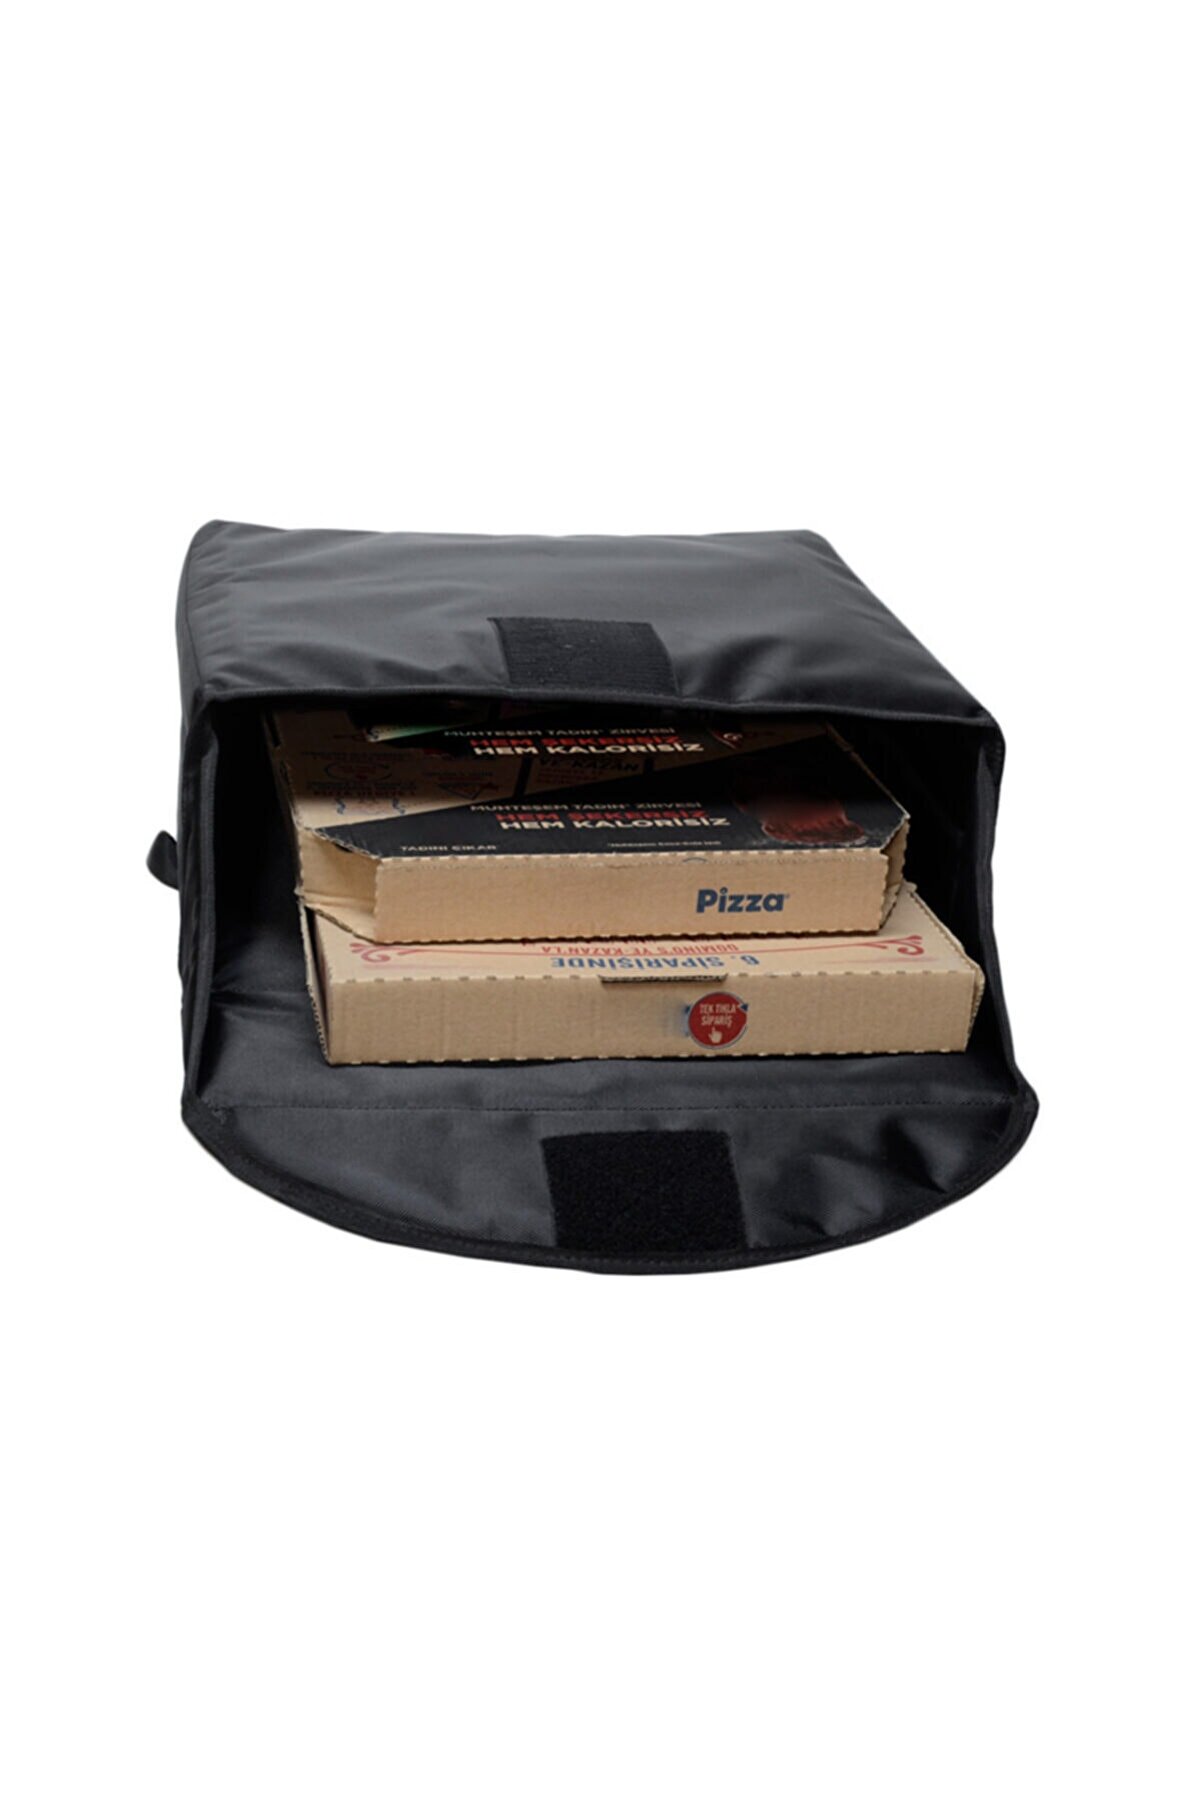 Bagworld Saraciye Paket Servis Pizza Çantası